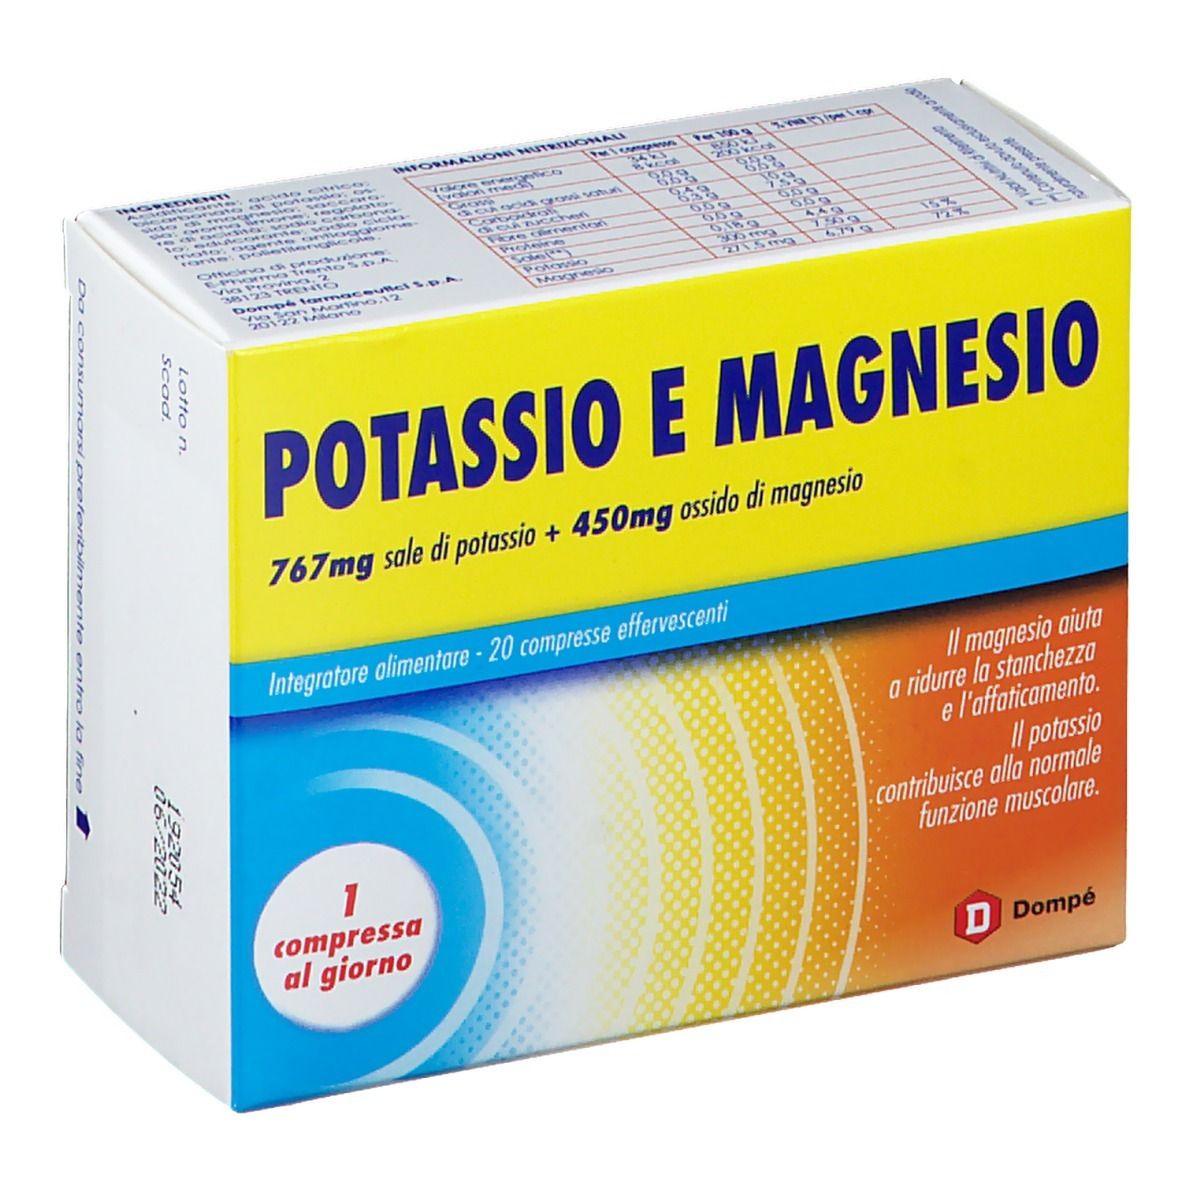 BRACCO Potassio e Magnesio 20 compresse